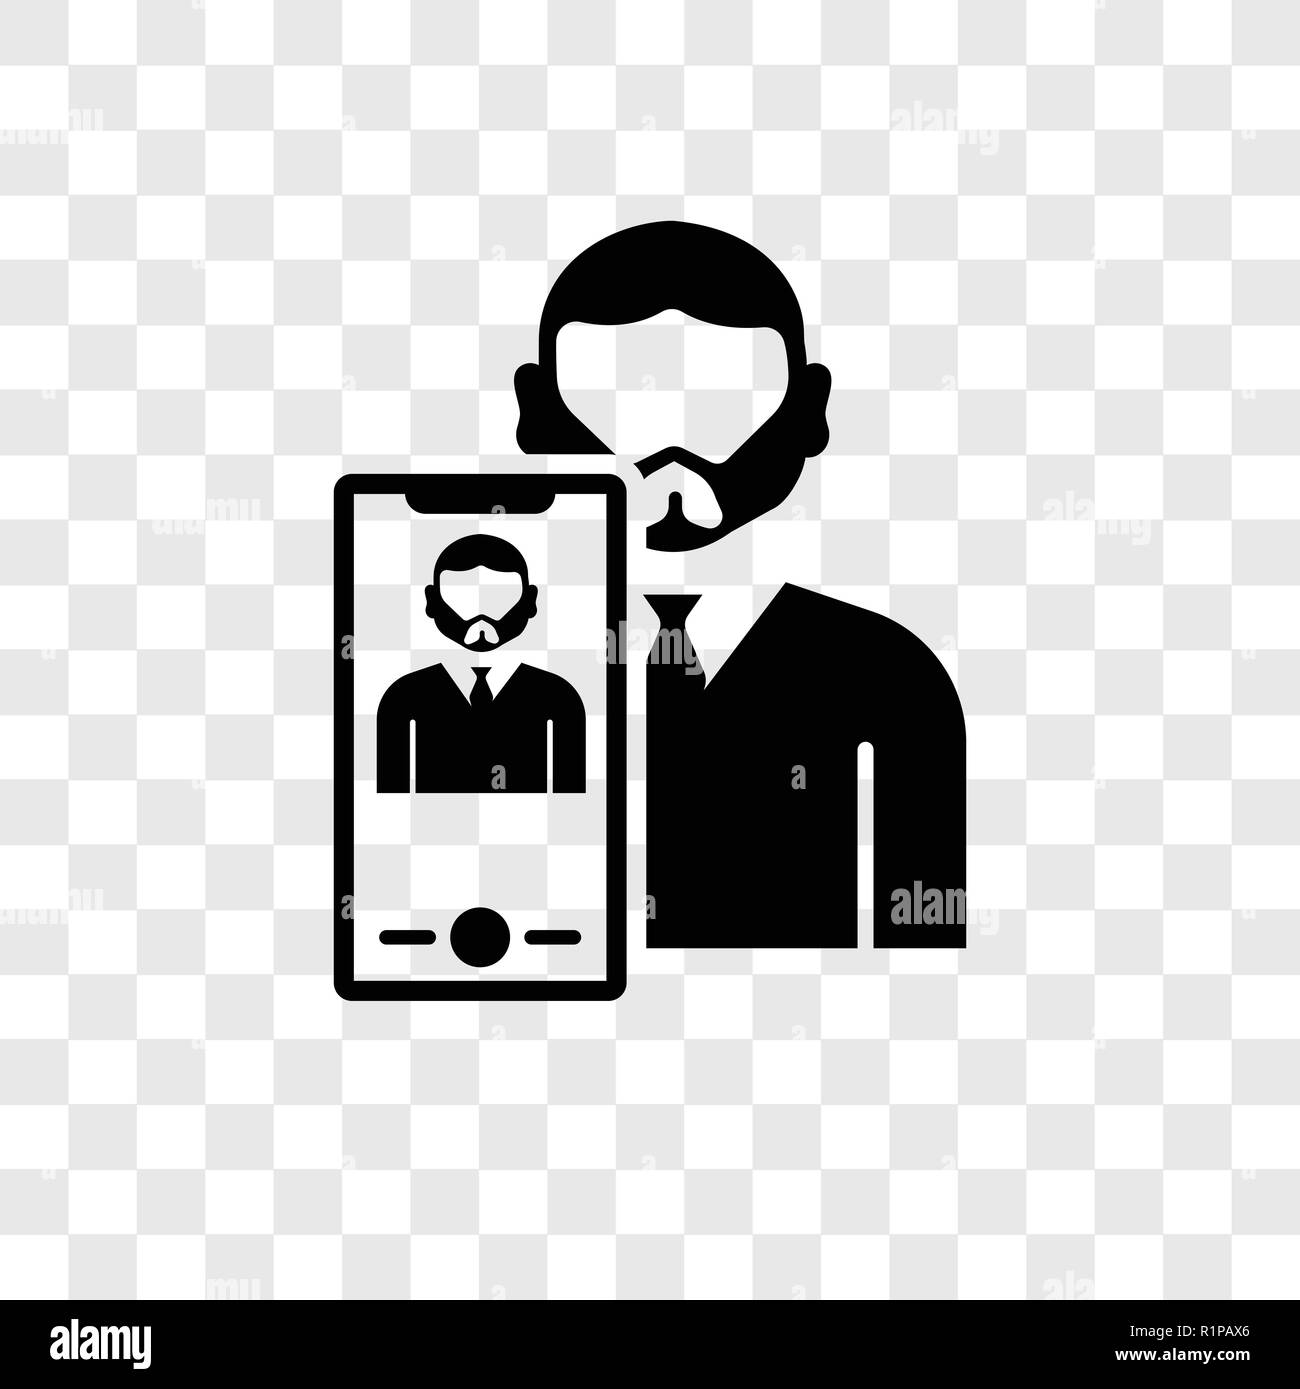 Selfie Vektor Icon Auf Transparentem Hintergrund Isoliert Selfie Transparenz Logo Konzept Stock Vektorgrafik Alamy